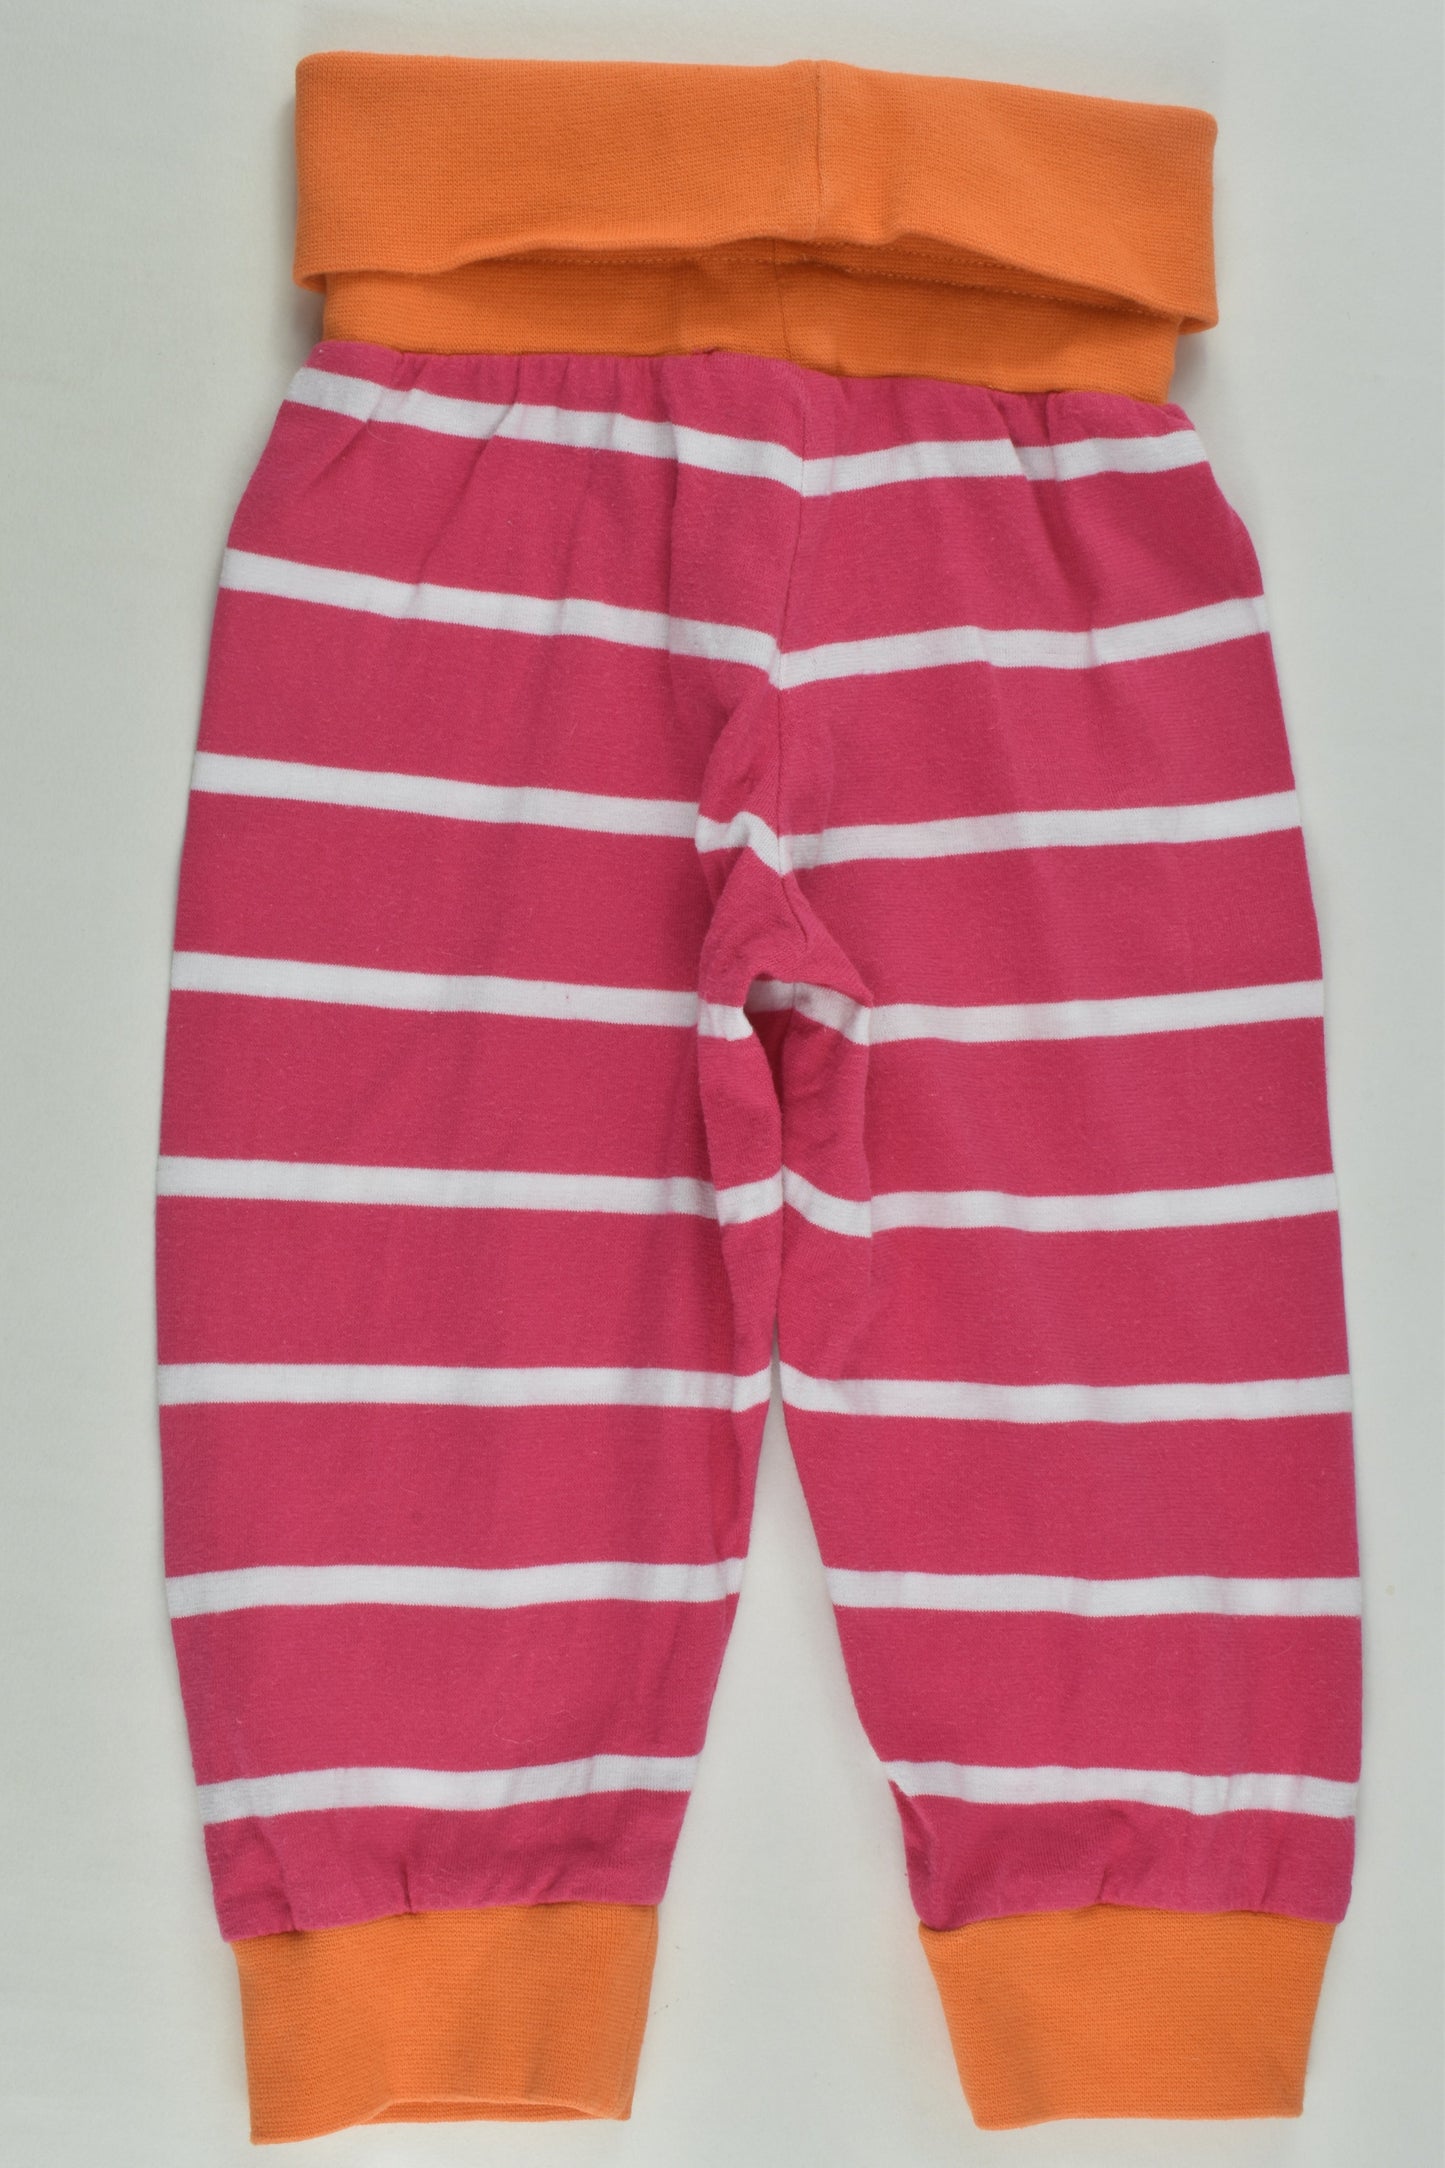 Finnwear Size 00 Striped Pants